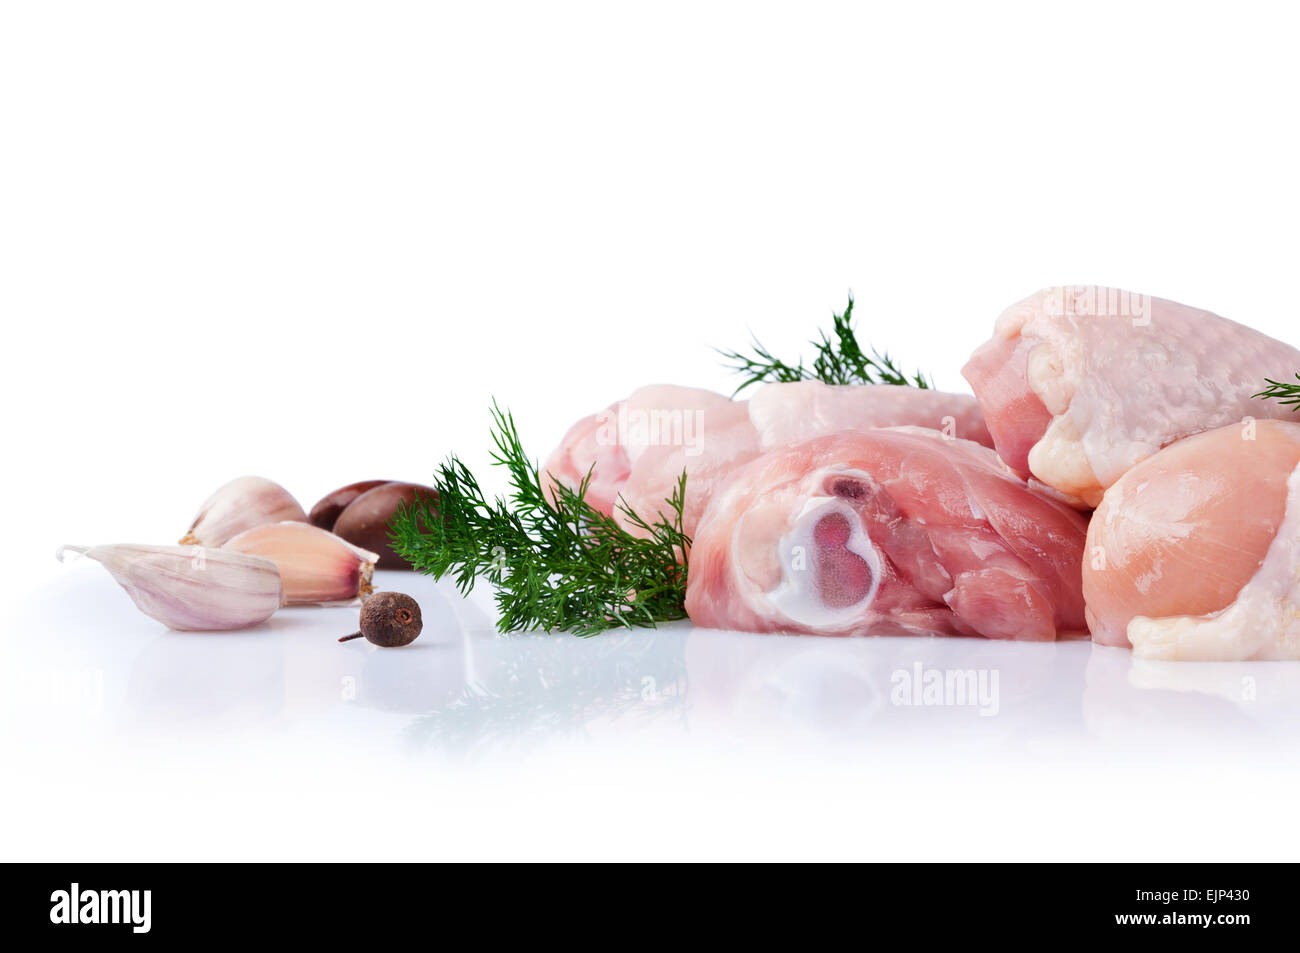 Materie le cosce di pollo con spicchi di aglio e aneto su sfondo bianco Foto Stock